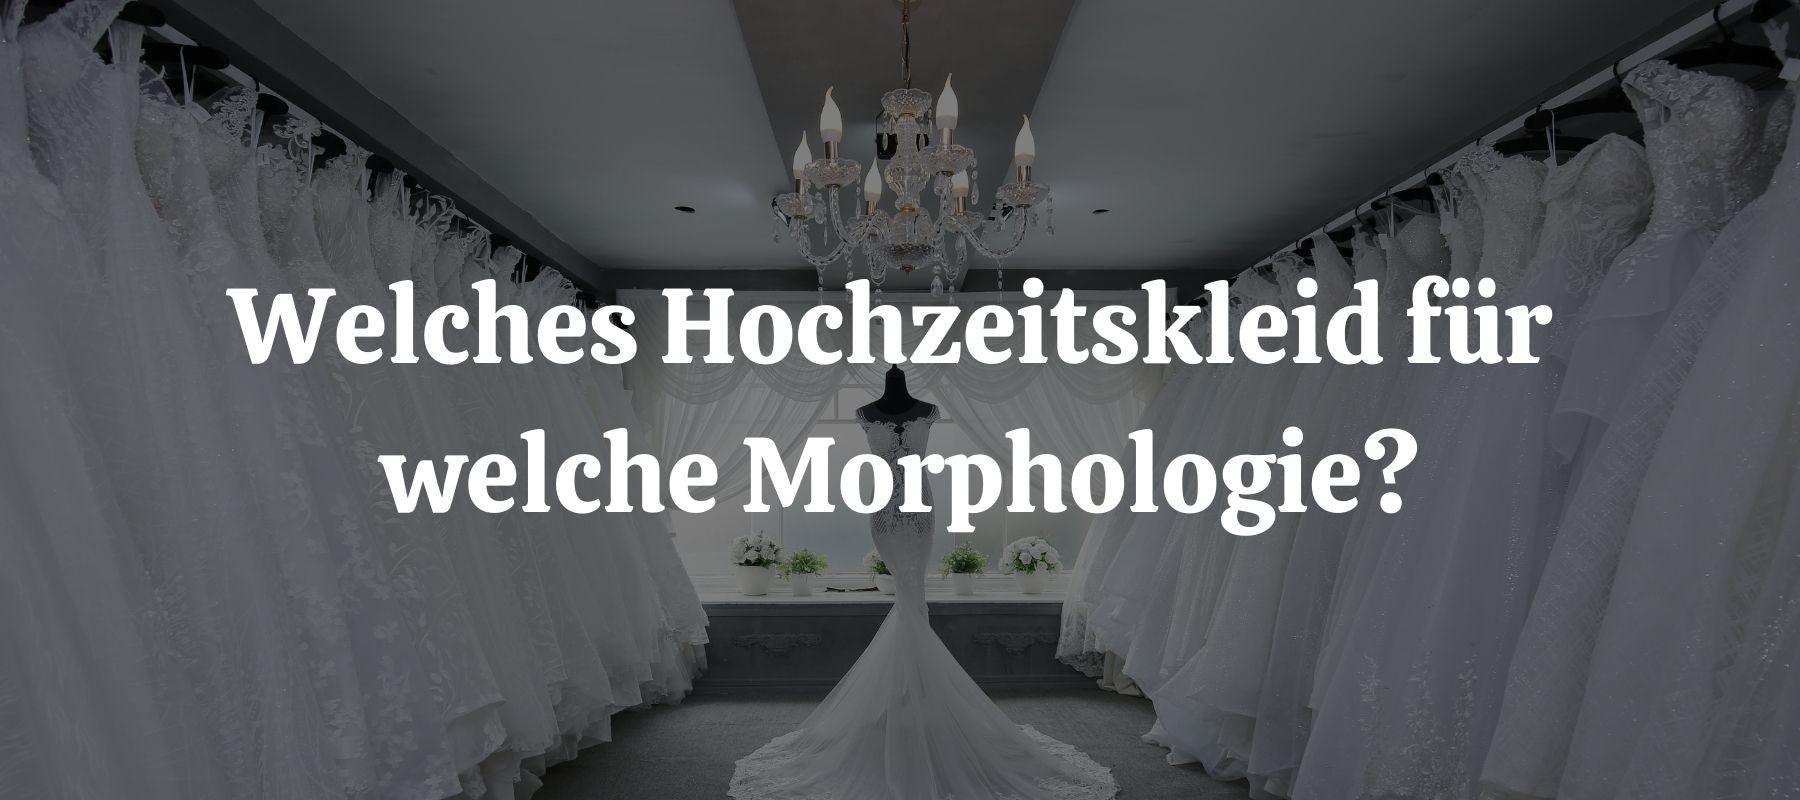 Welches Hochzeitskleid für welche Morphologie?